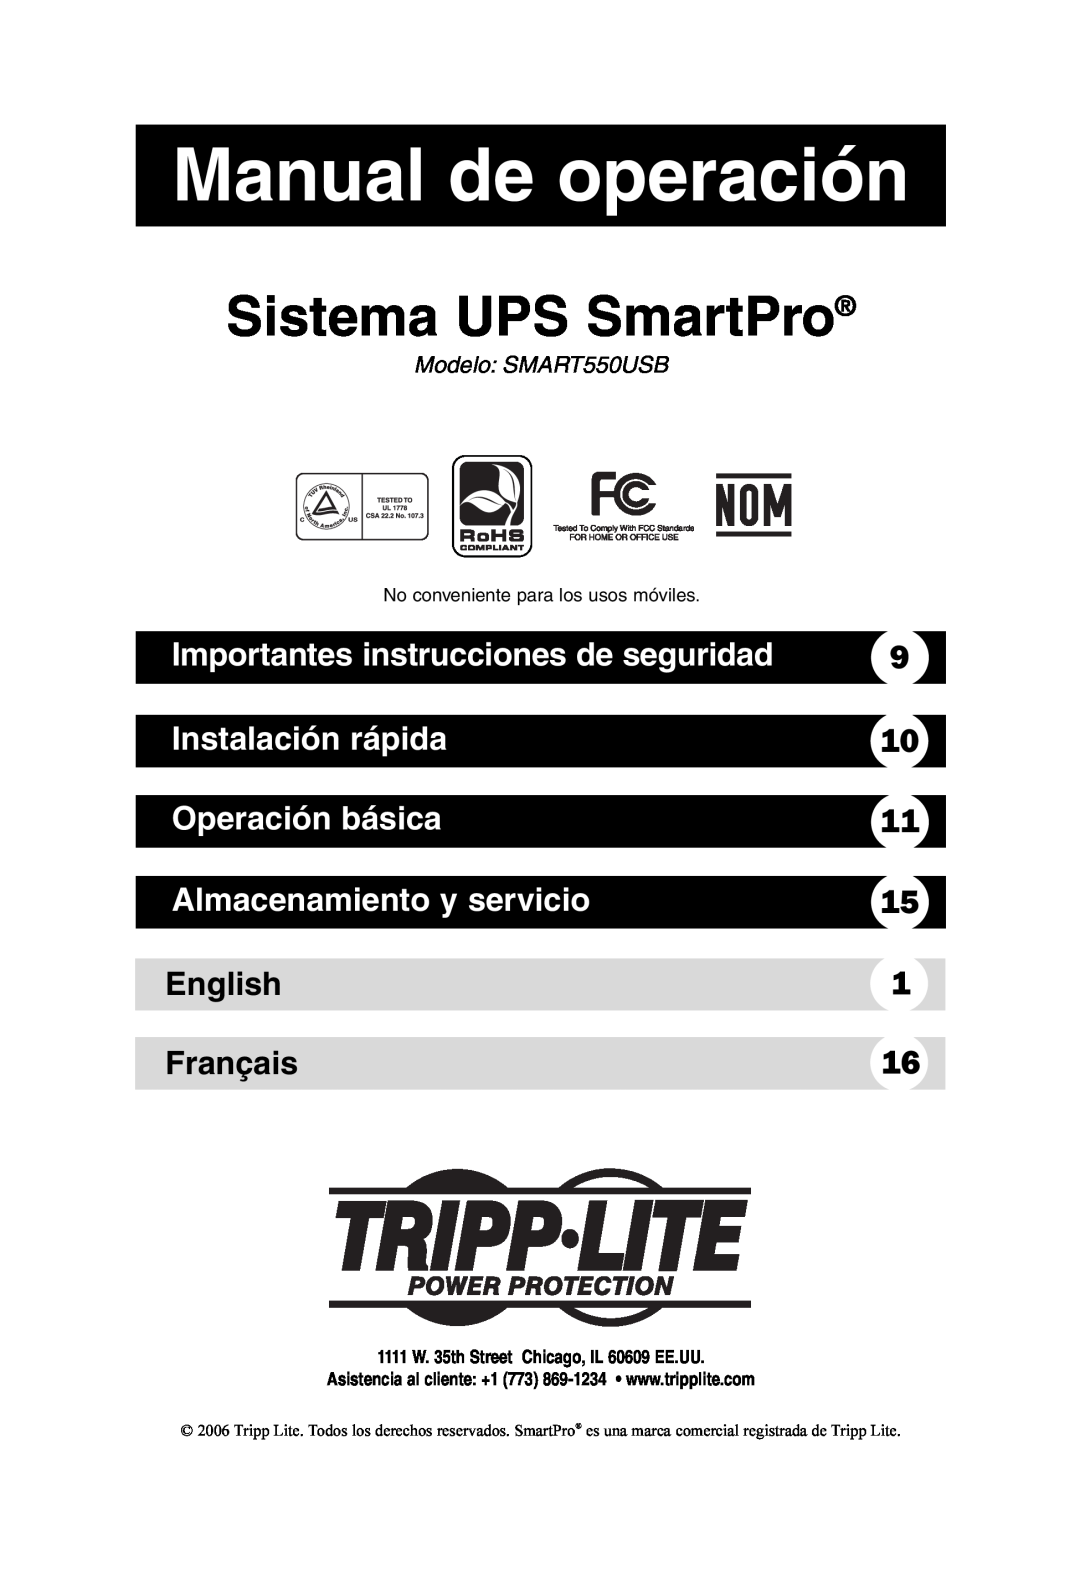 Tripp Lite SMART550USB Manual de operación, Sistema UPS SmartPro, Importantes instrucciones de seguridad, Operación básica 